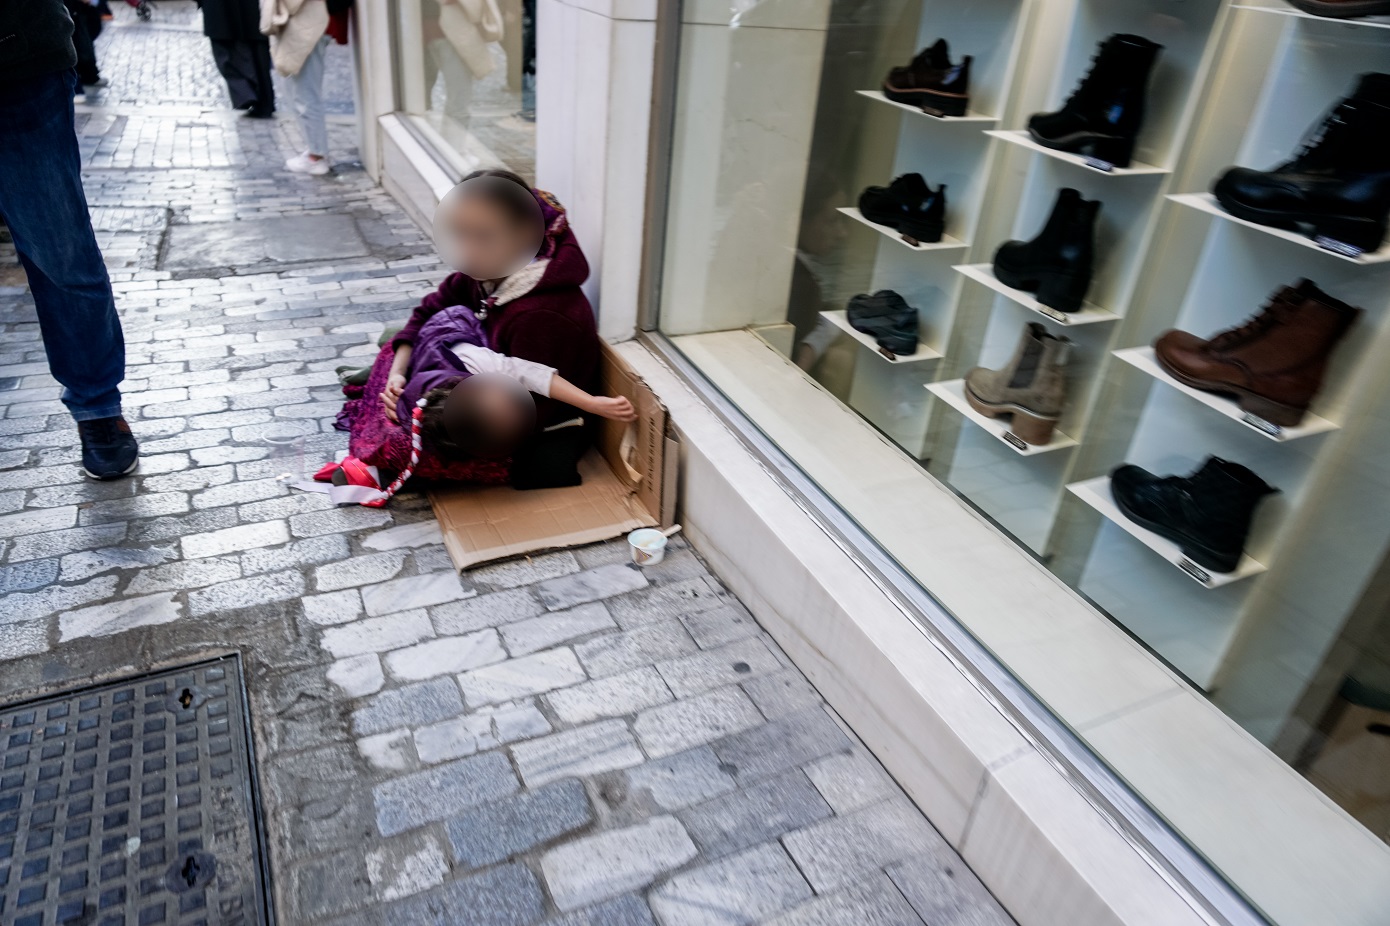 Πάνω από 300 παιδιά εντοπίστηκαν στους δρόμους της Θεσσαλονίκης μέσα σε 9 μήνες σε συνθήκες επαιτείας